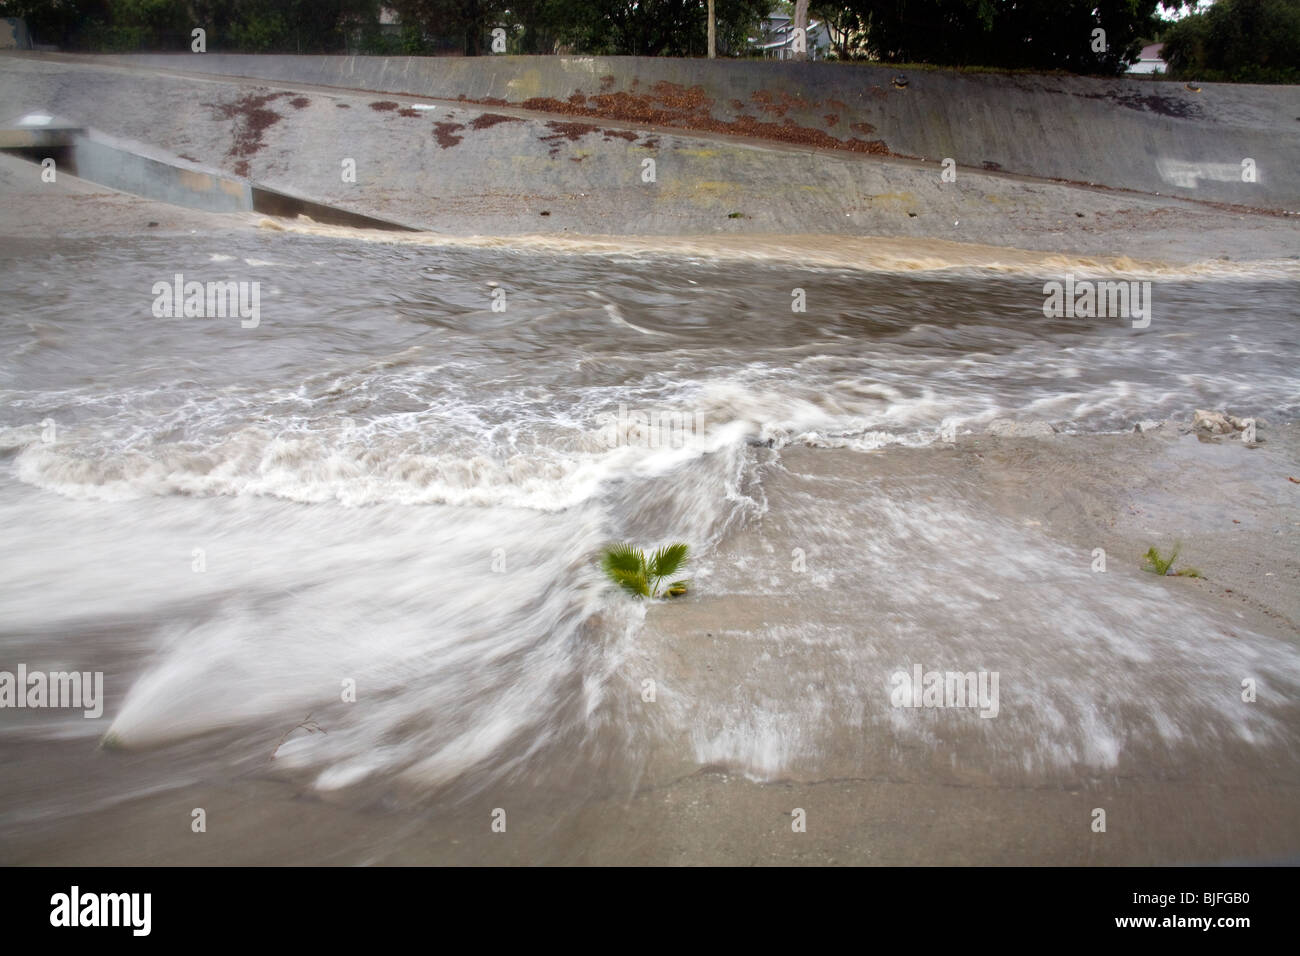 L'eau de pluie se déverse des tuyaux dans le ruisseau Ballona, neuf mille d'eau qui draine le bassin de Los Angeles. Culver City Banque D'Images